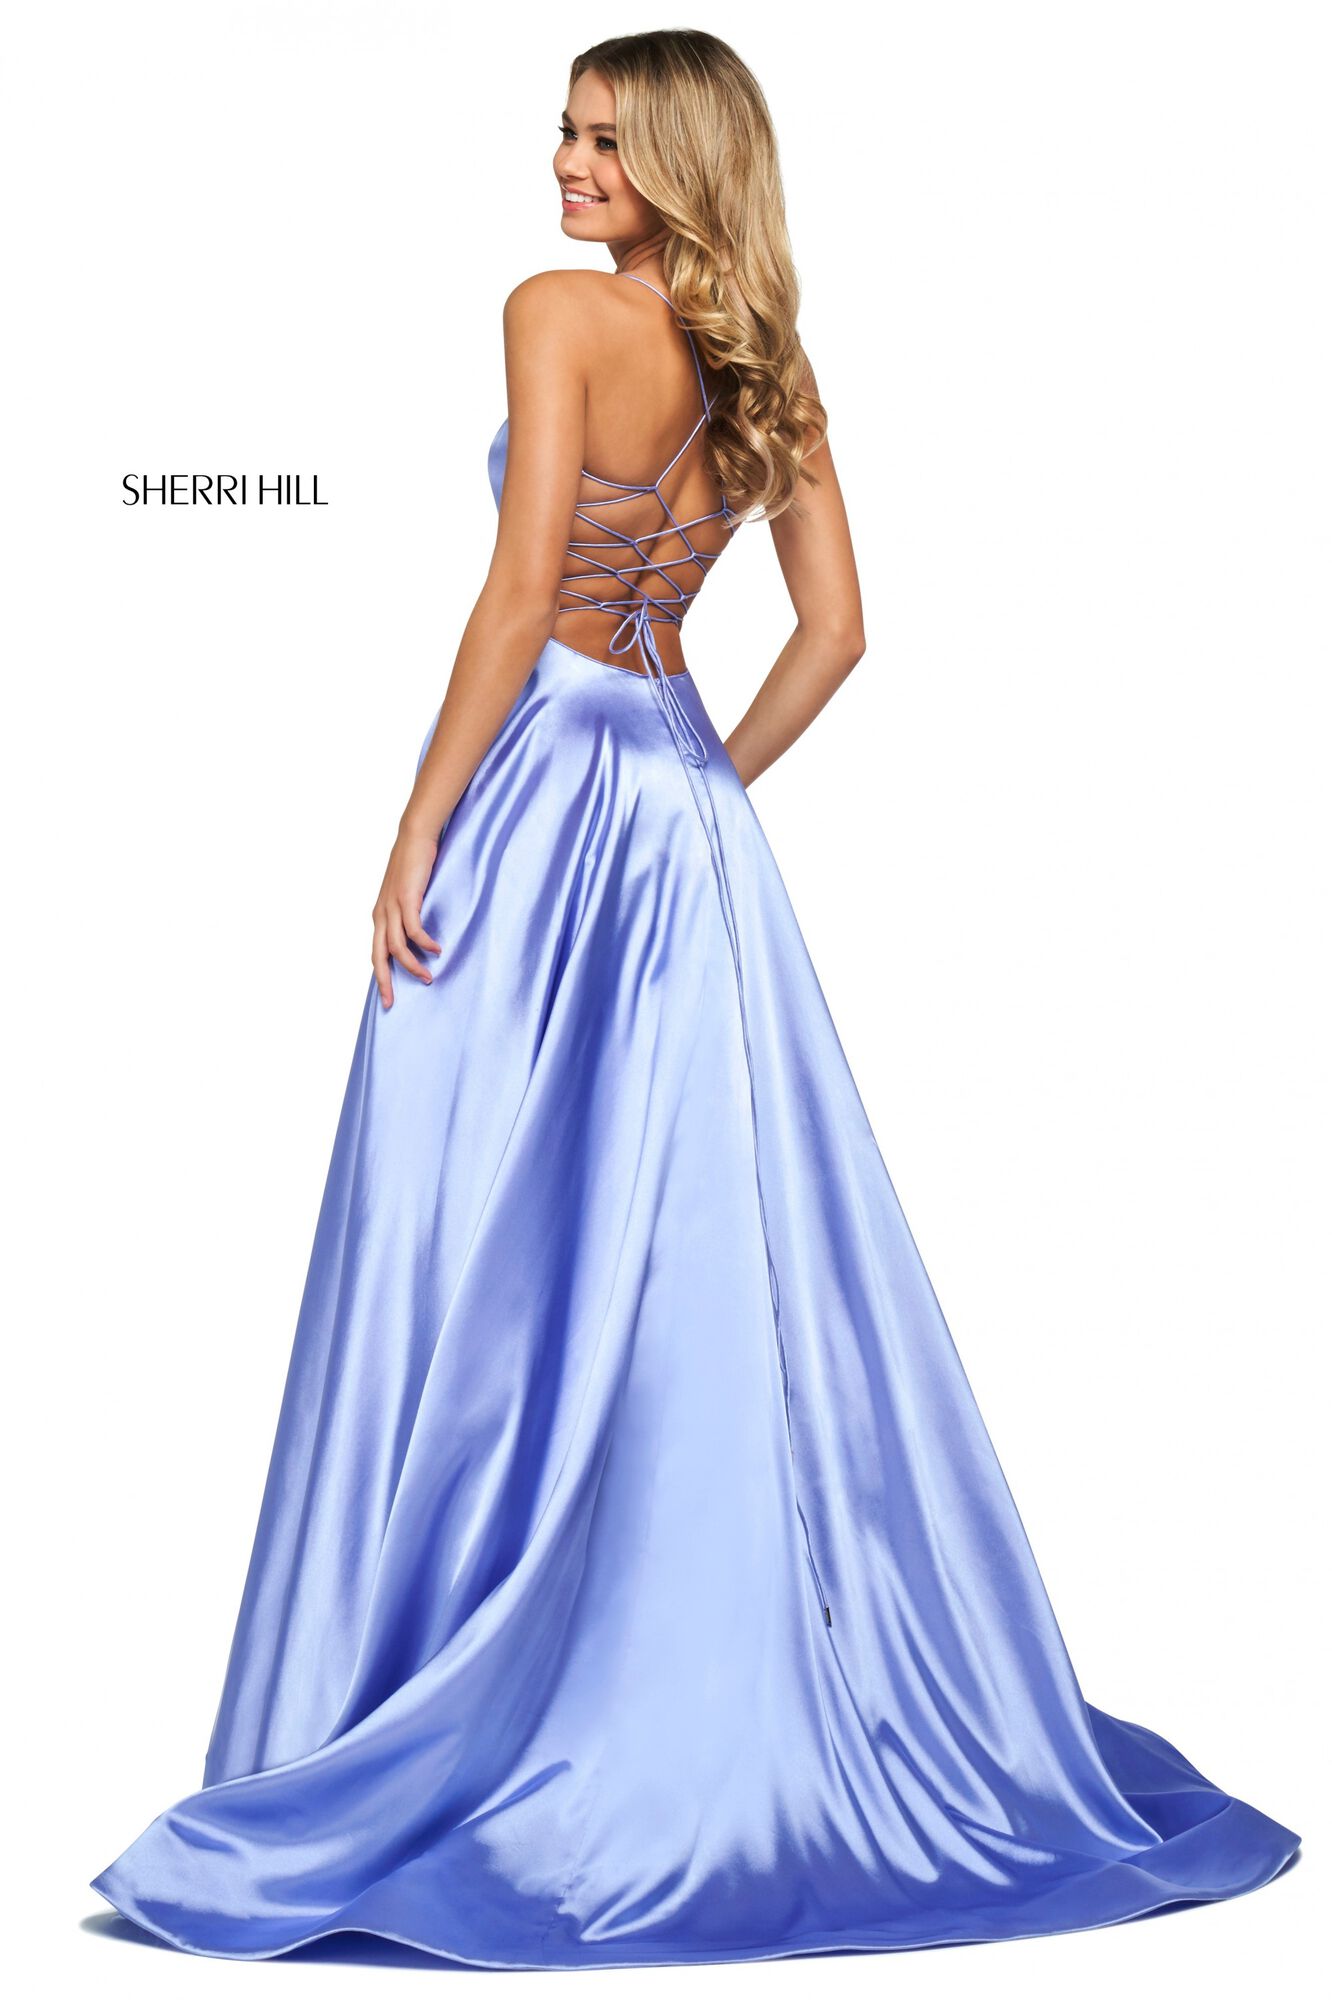 Sherri Hill 55957 Dress | Sherri Hill Dresses | Formal Approach 14 / Lilac